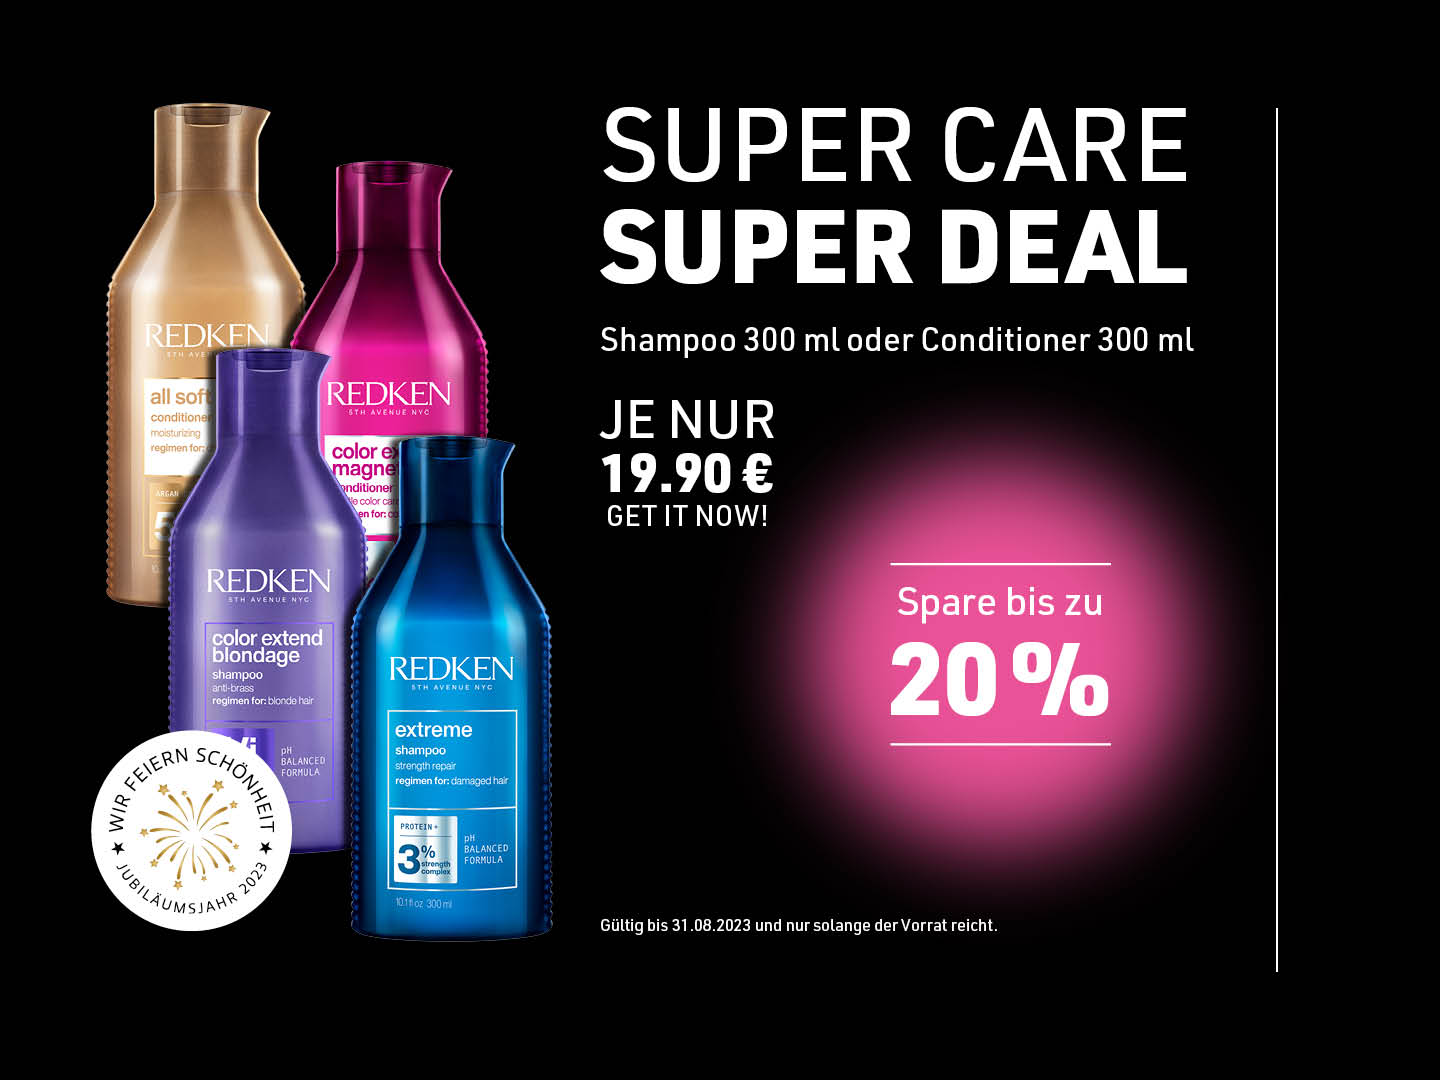 Super Cut: Super Care - Super Deal 2